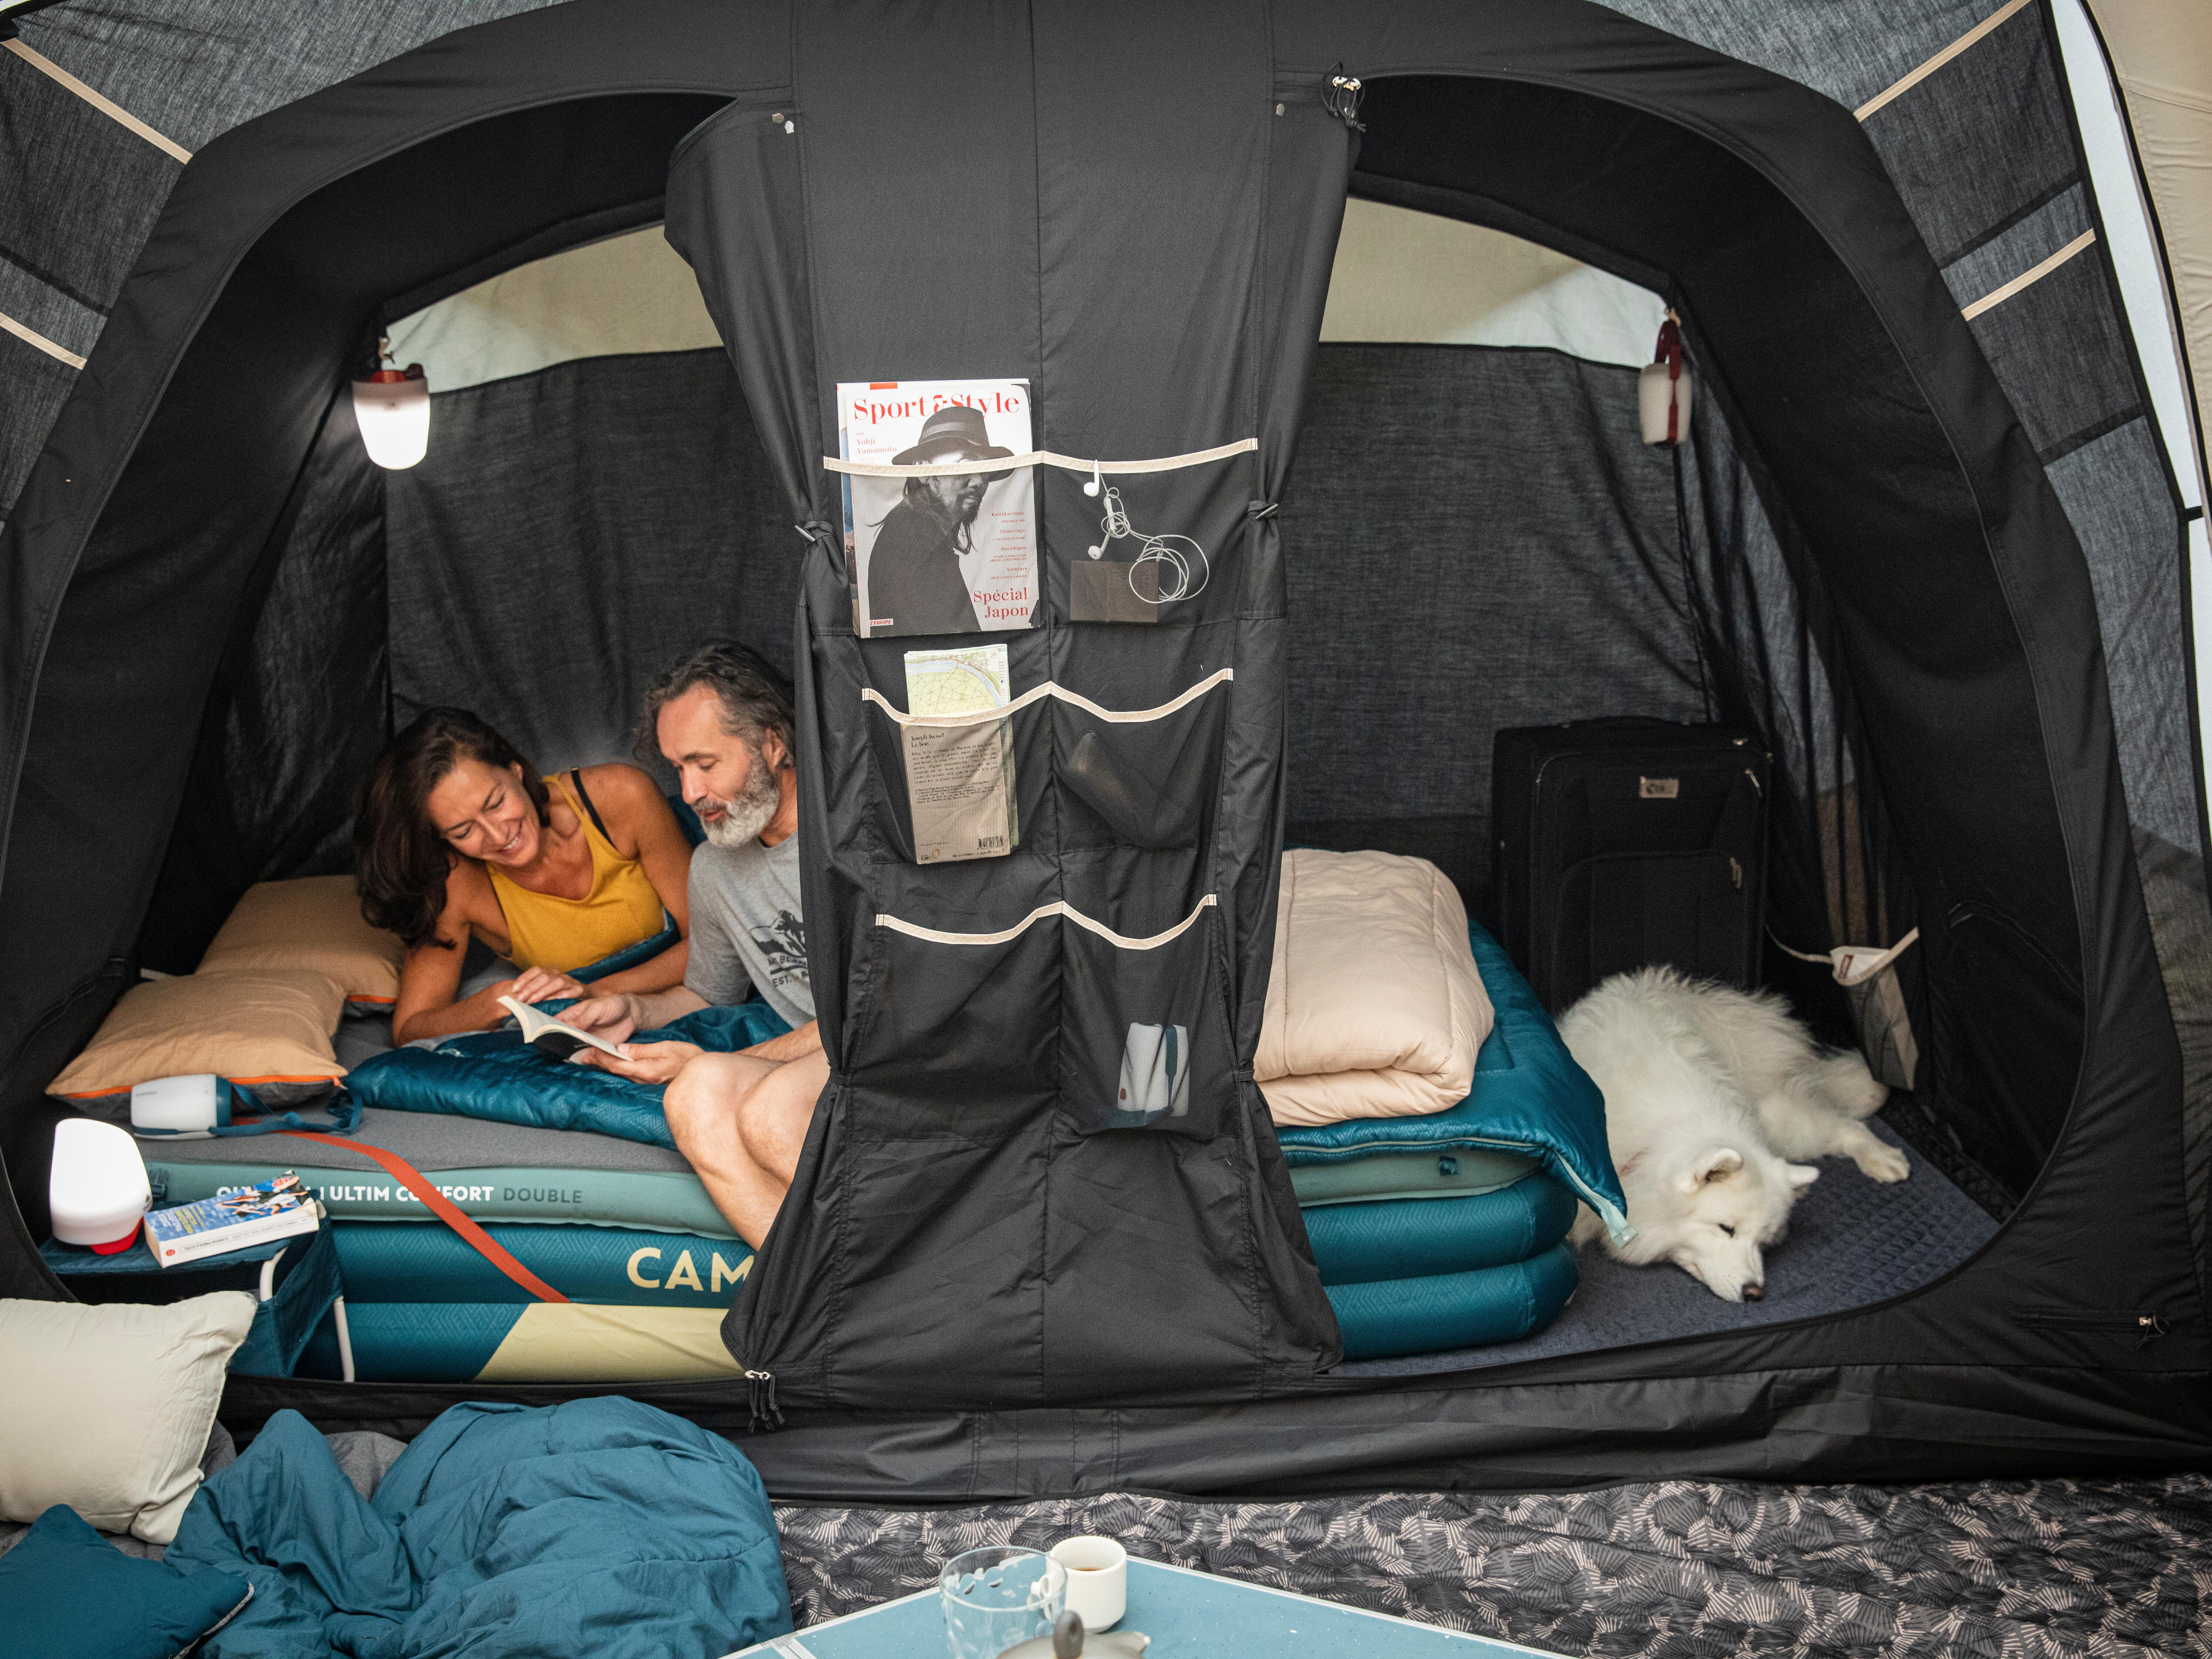 Lit de camp avec tente, sac de couchage et matelas gonflable camping